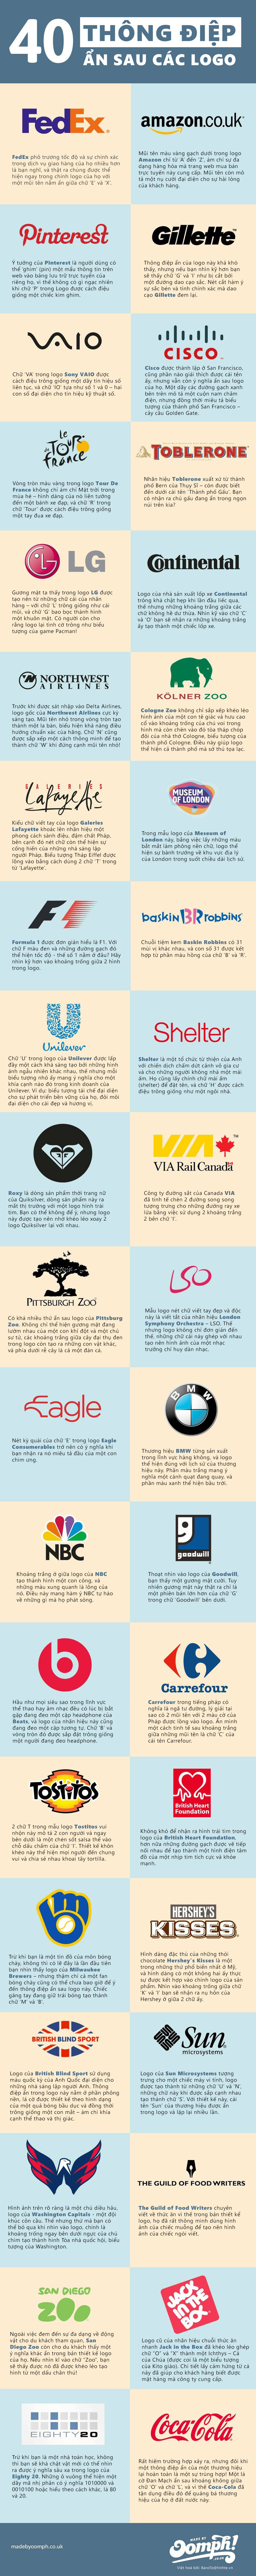 [Infographic] 40 logo ẩn chứa thông điệp doanh nghiệp 4